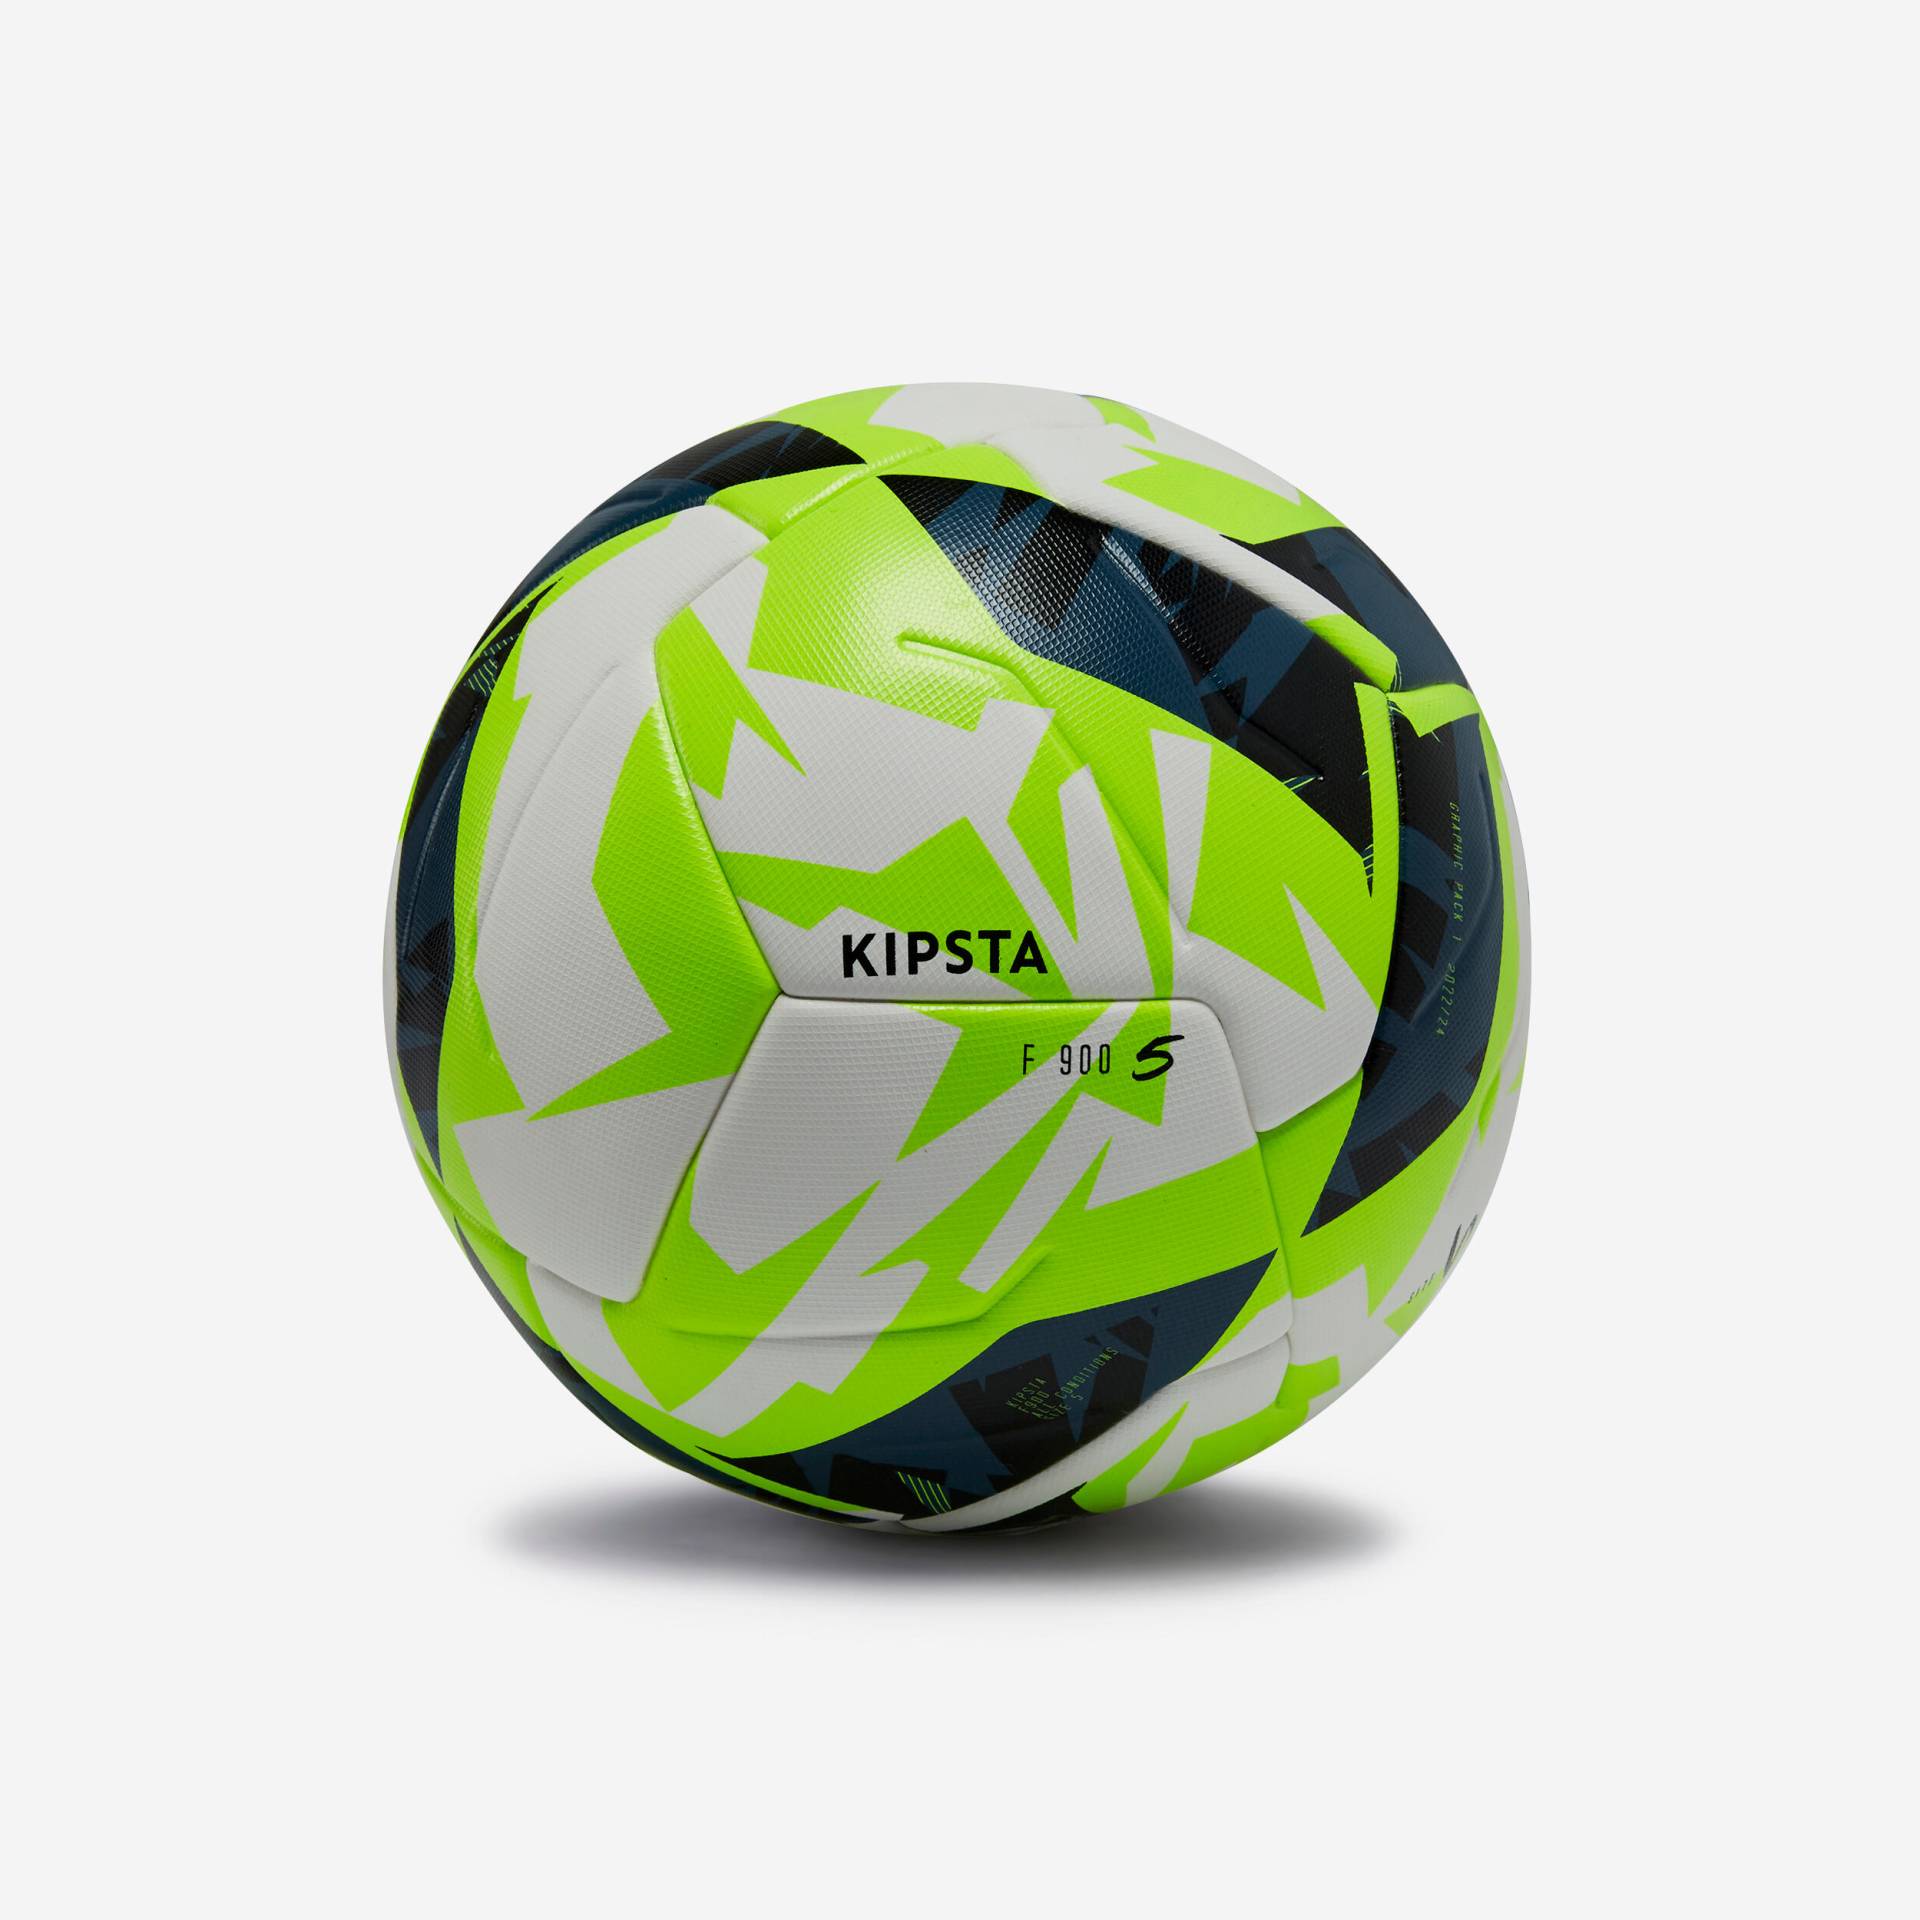 Fussball Grösse 5 FIFA Quality Pro wärmegeklebt - F900 weiss/gelb von KIPSTA